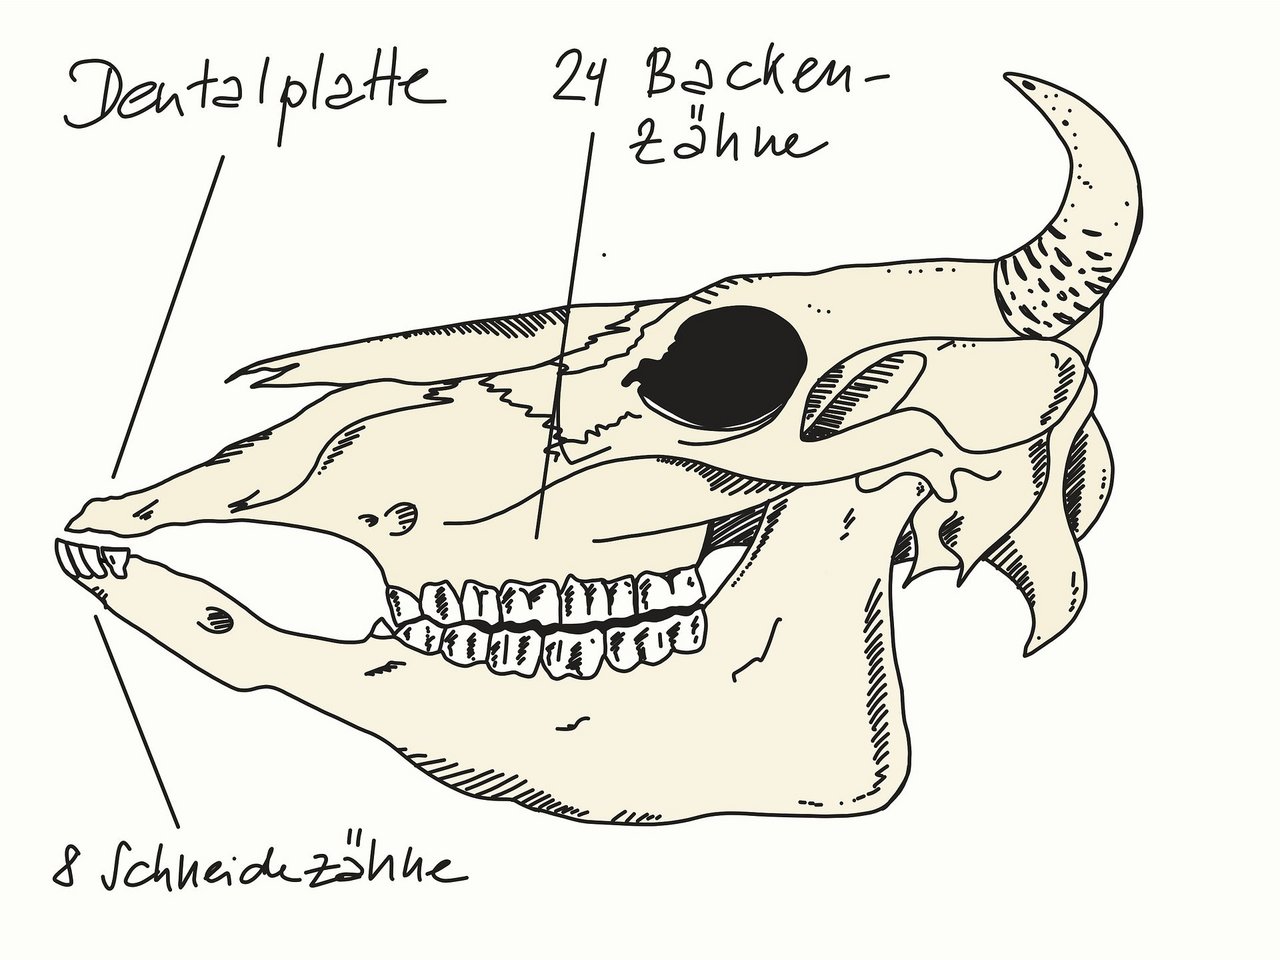 Auf der schematischen Darstellung sind die Dentalplatte, die 24 Backen- sowie die 8 Schneidezähne einer Kuh gut zu erkennen. (Bild Johanna Probst)